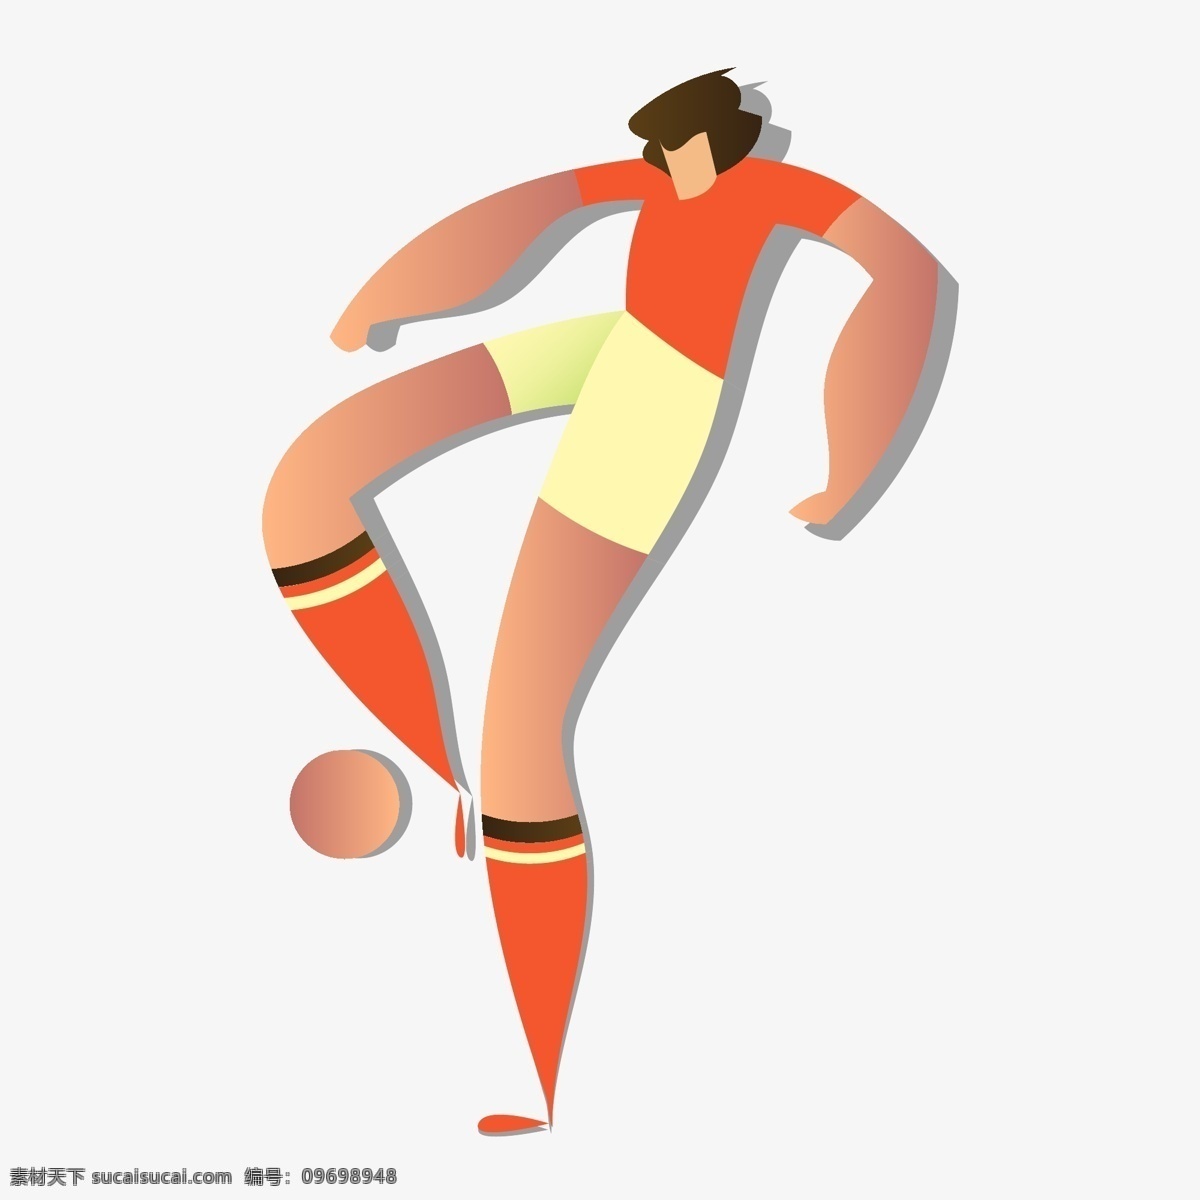 俄罗斯 世界杯 橙色 卡通 运球 人物 矢量 图案 2018 足球 欧冠 矢量足球 冠军 教练 球队 足球装饰 装饰图案 矢量装饰 足球风